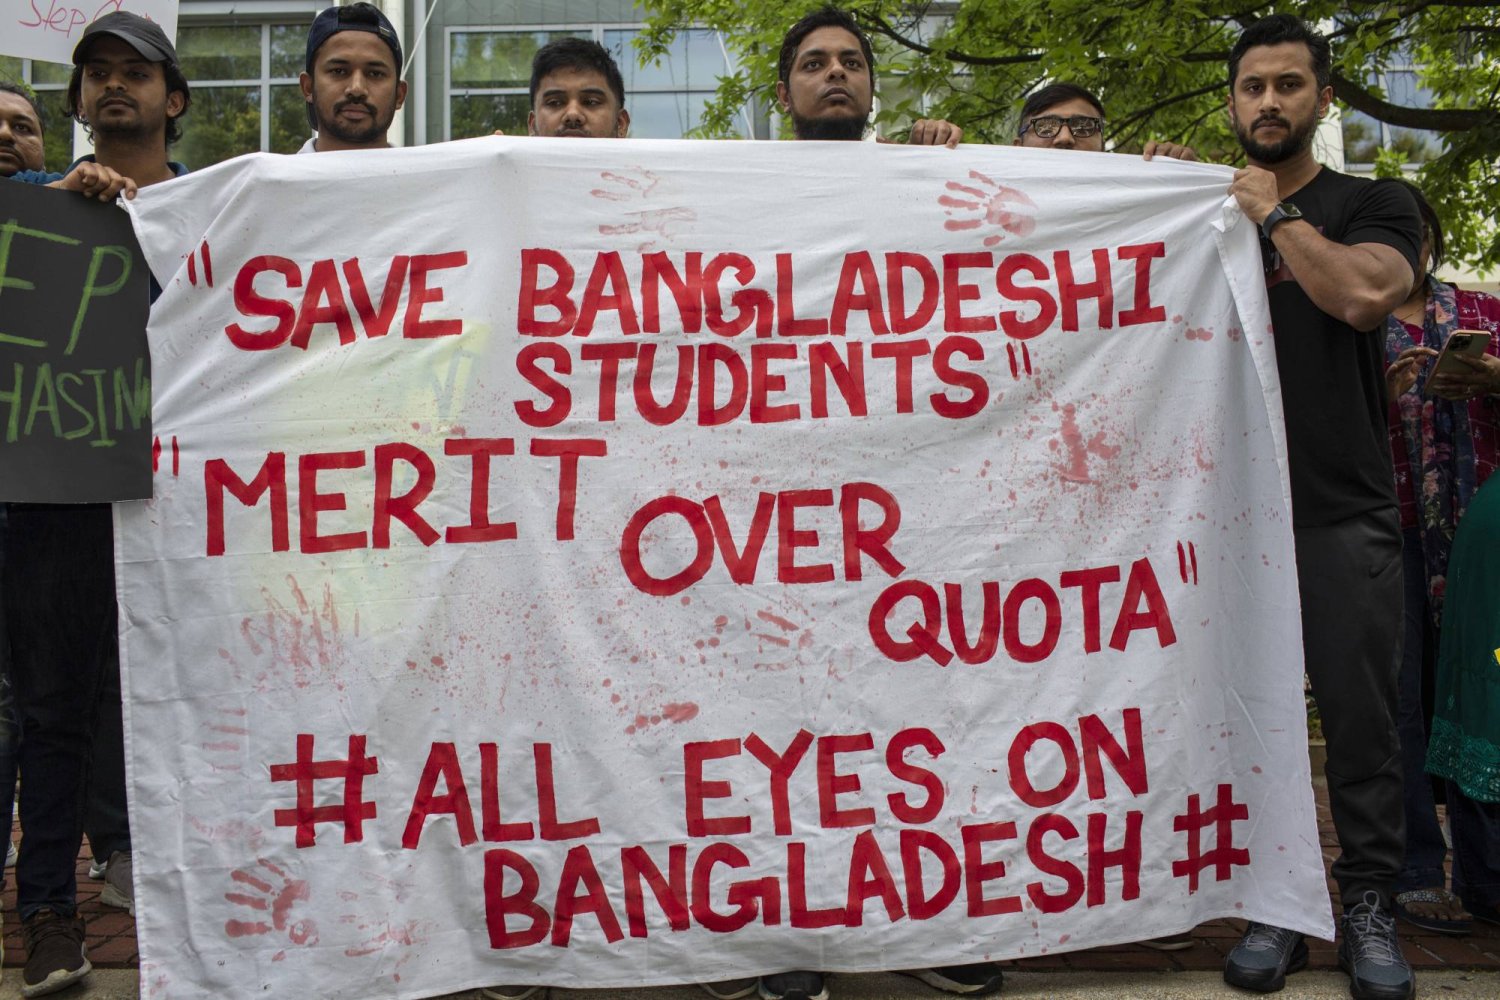 احتجاجات بنغلاديش تحدٍ كبير لنظام الشيخة حسينة